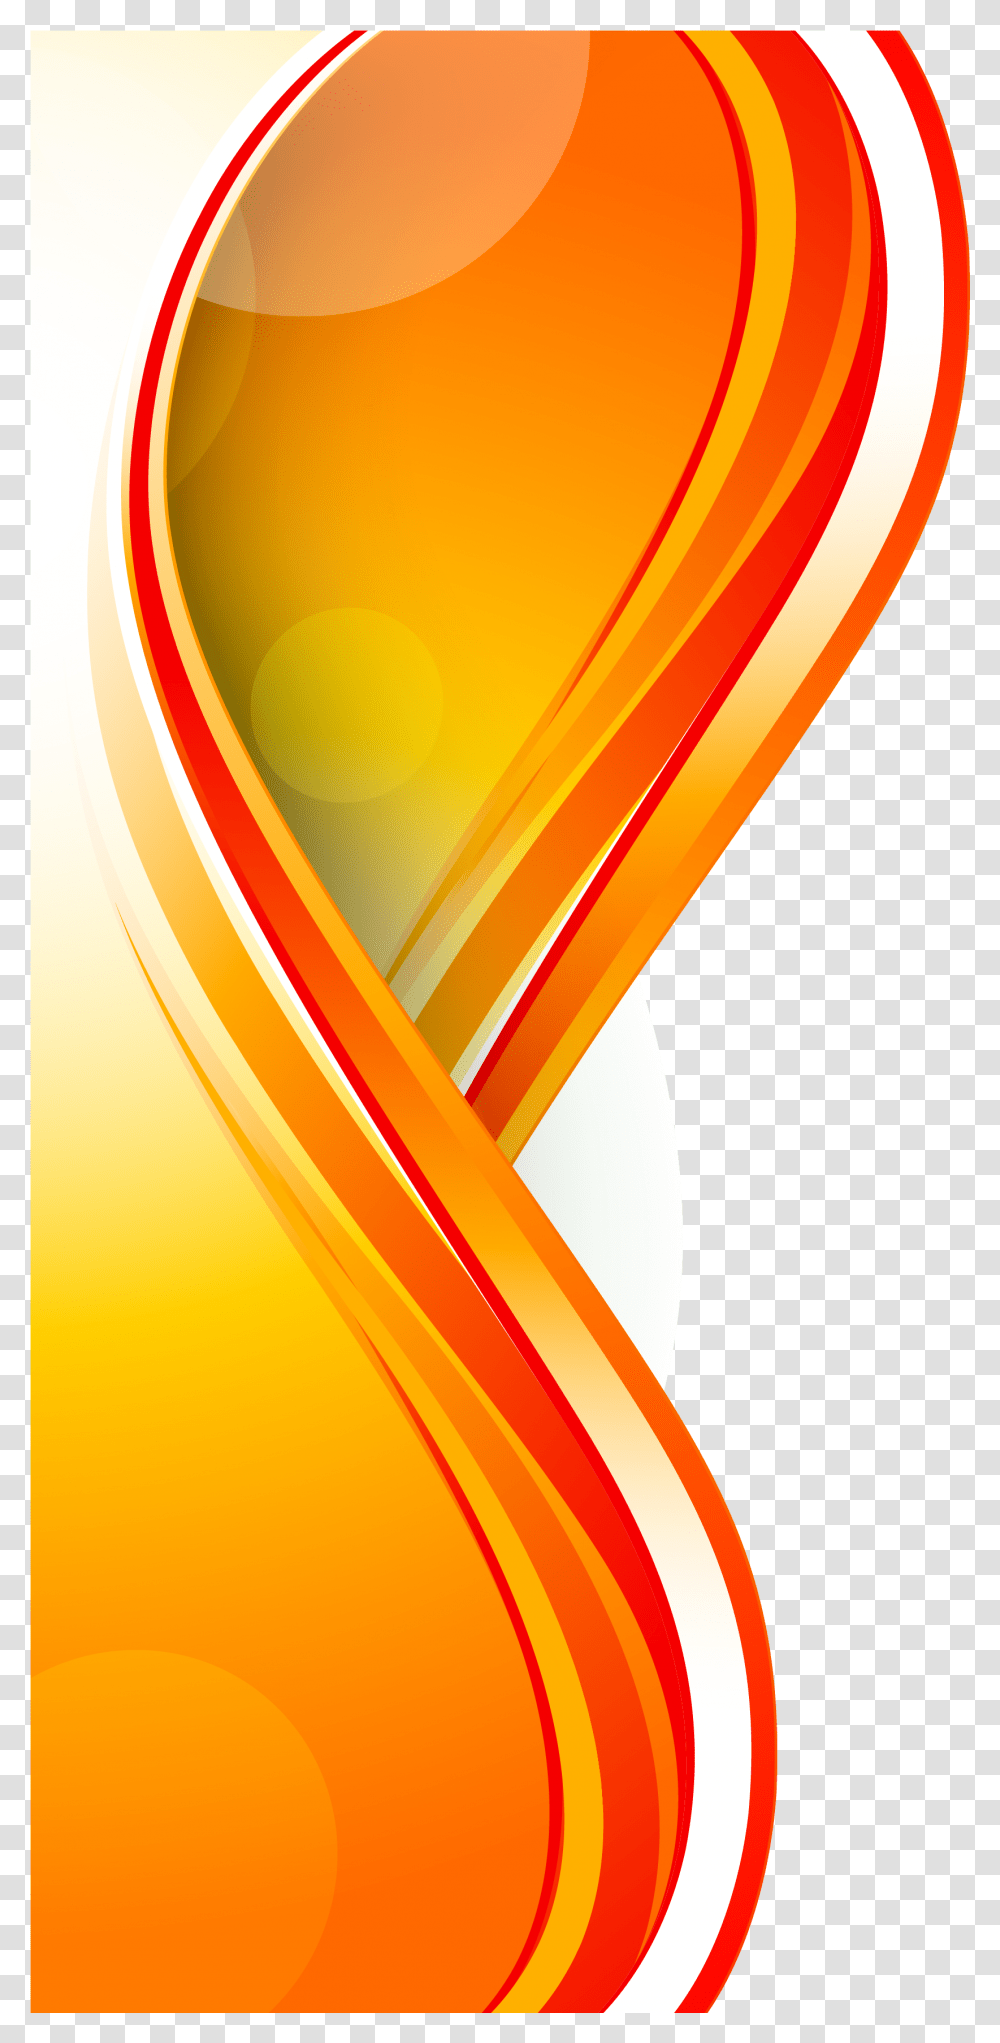 Euclidean Panels Background Transprent Free Download Background Vector Orange Modern Art Floral Design Transparent Png Pngset Com